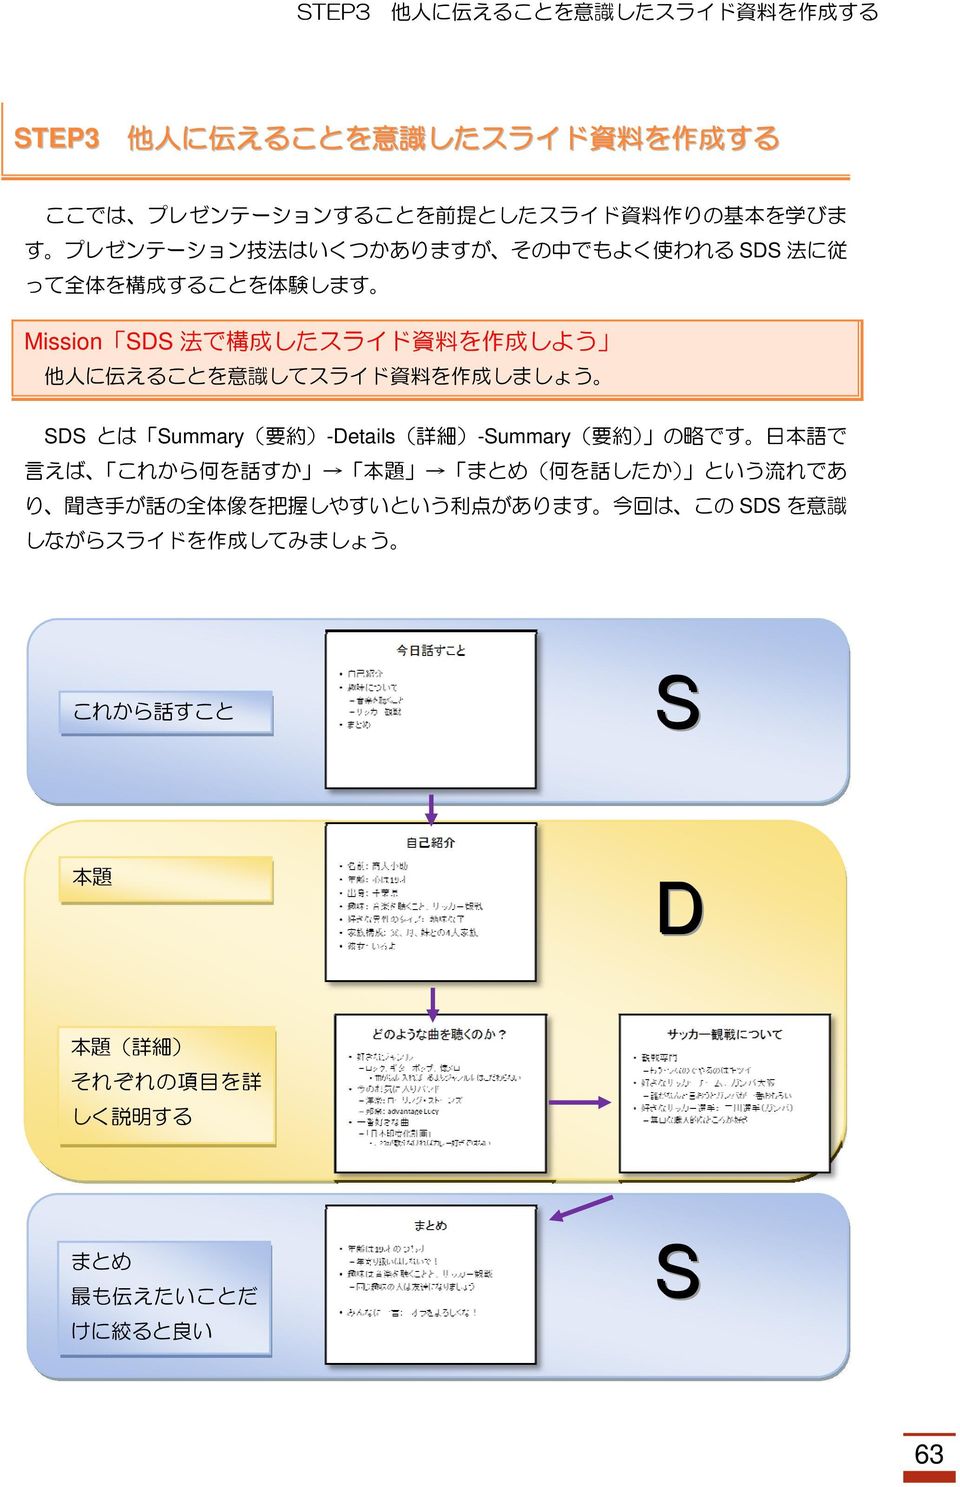 を 作 成 しましょう SDS とは Summary( 要 約 )-Details( 詳 細 )-Summary( 要 約 ) の 略 です 日 本 語 で 言 えば これから 何 を 話 すか 本 題 まとめ( 何 を 話 したか) という 流 れであ り 聞 き 手 が 話 の 全 体 像